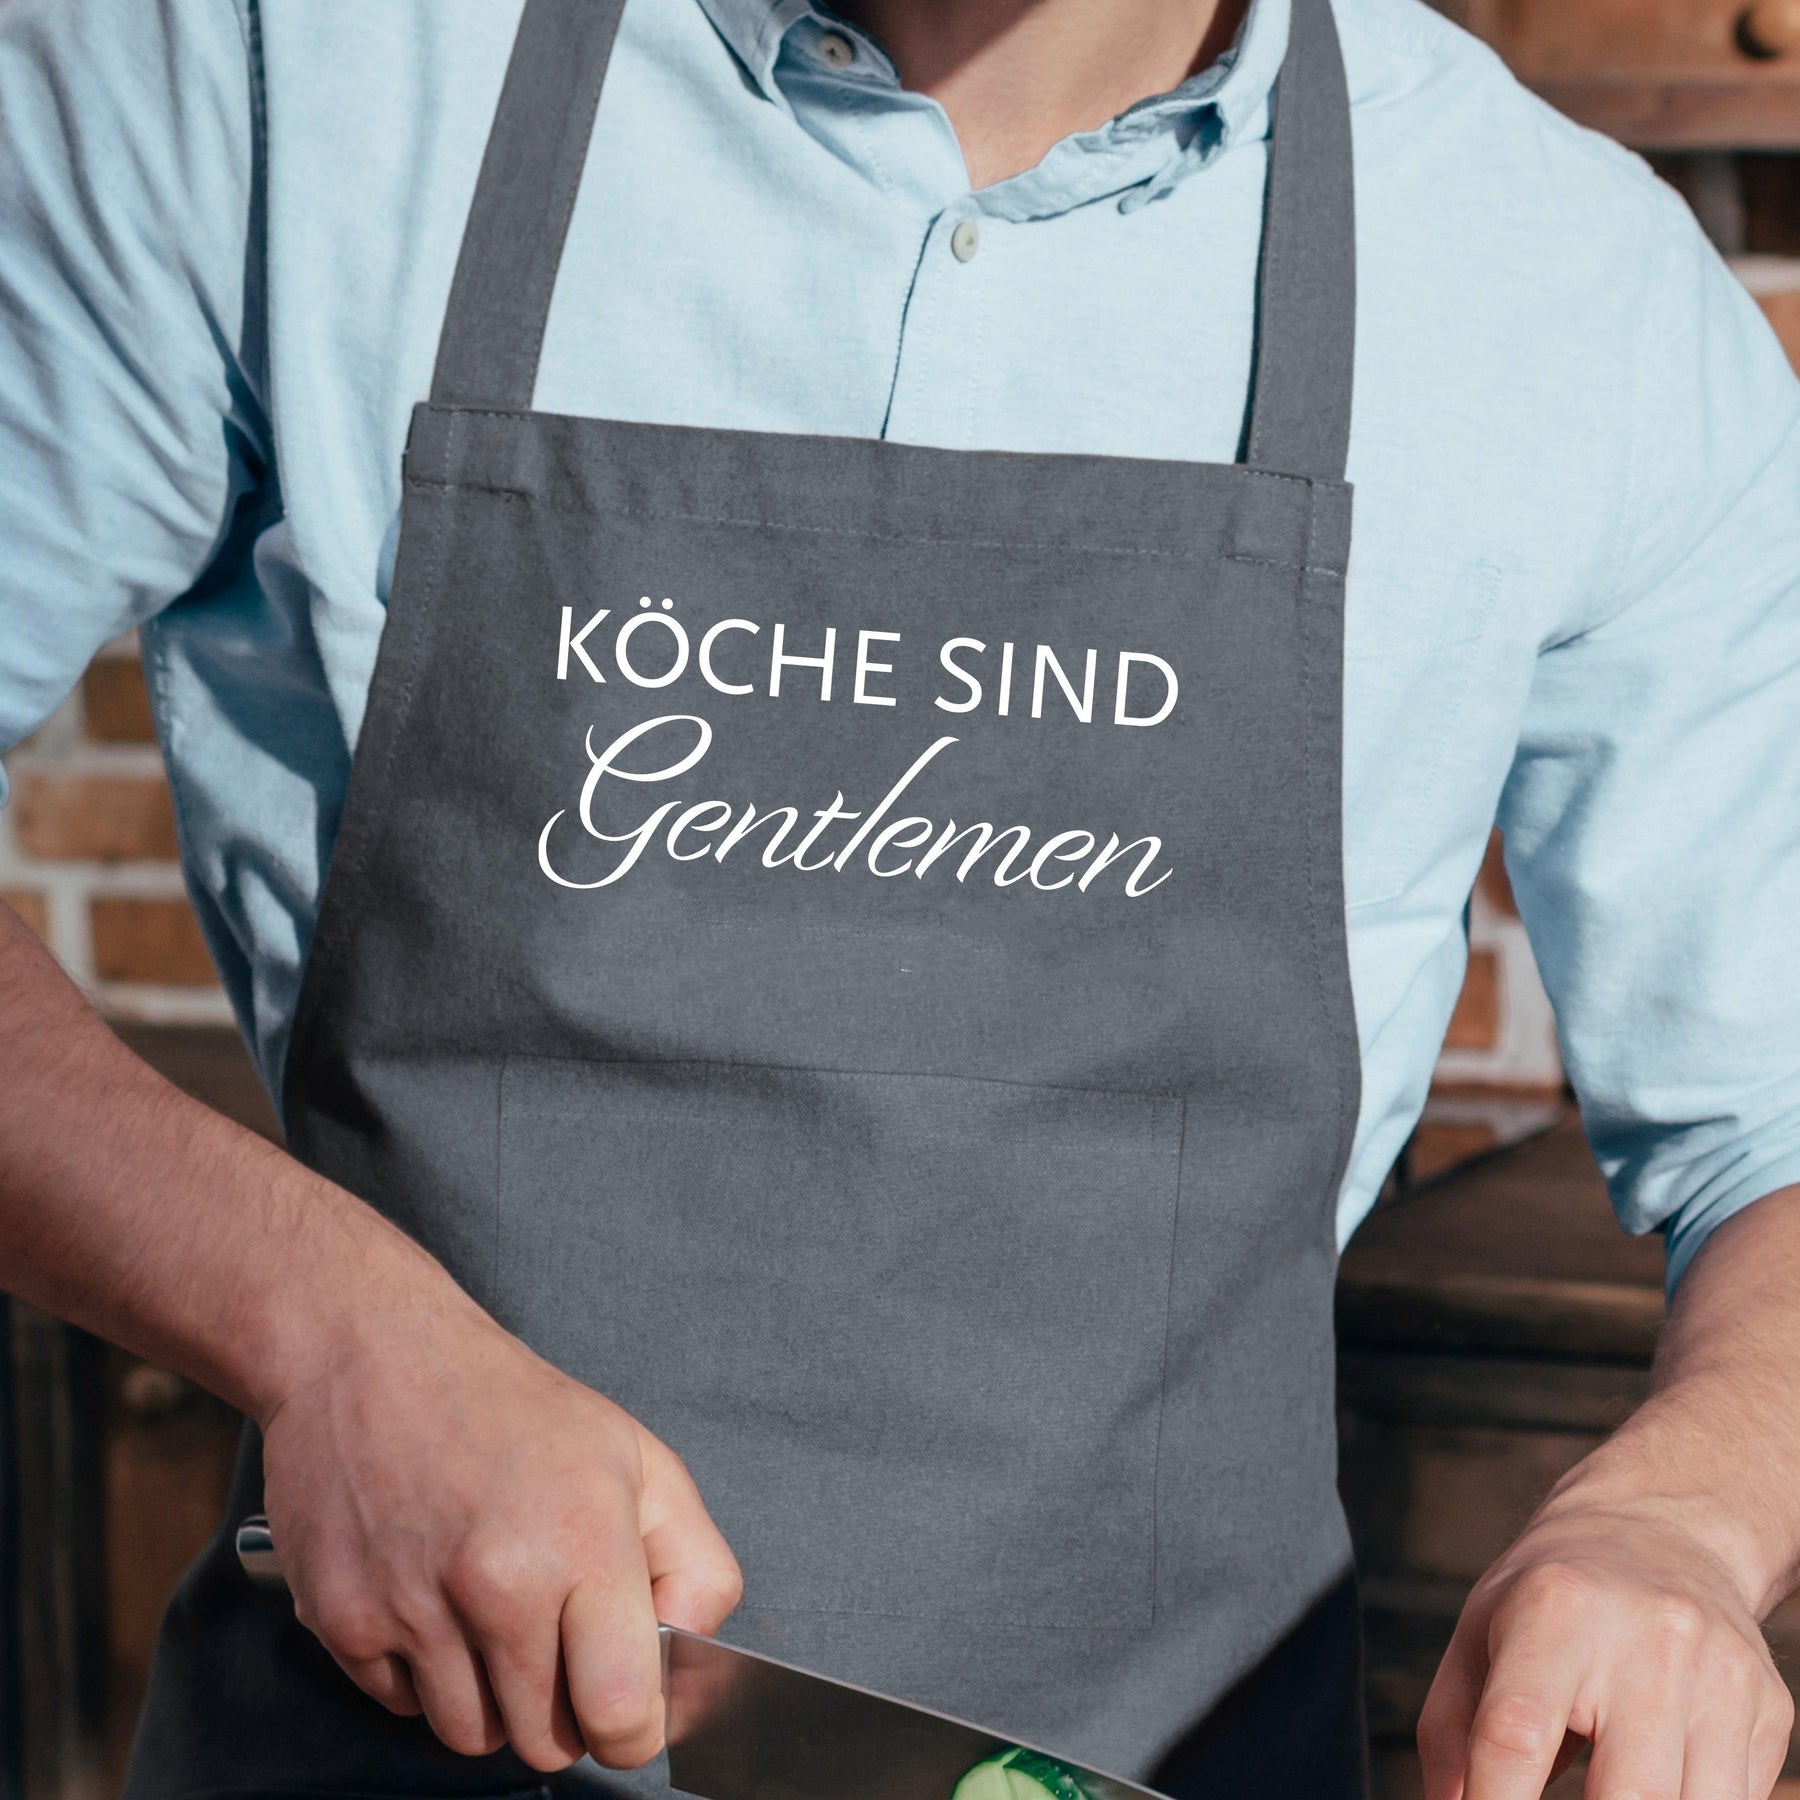 Handbedruckte Küchenschürze grau, KÖCHE SIND Gentlemen-Schürzen-17;30 HAMBURG-LAPONDO